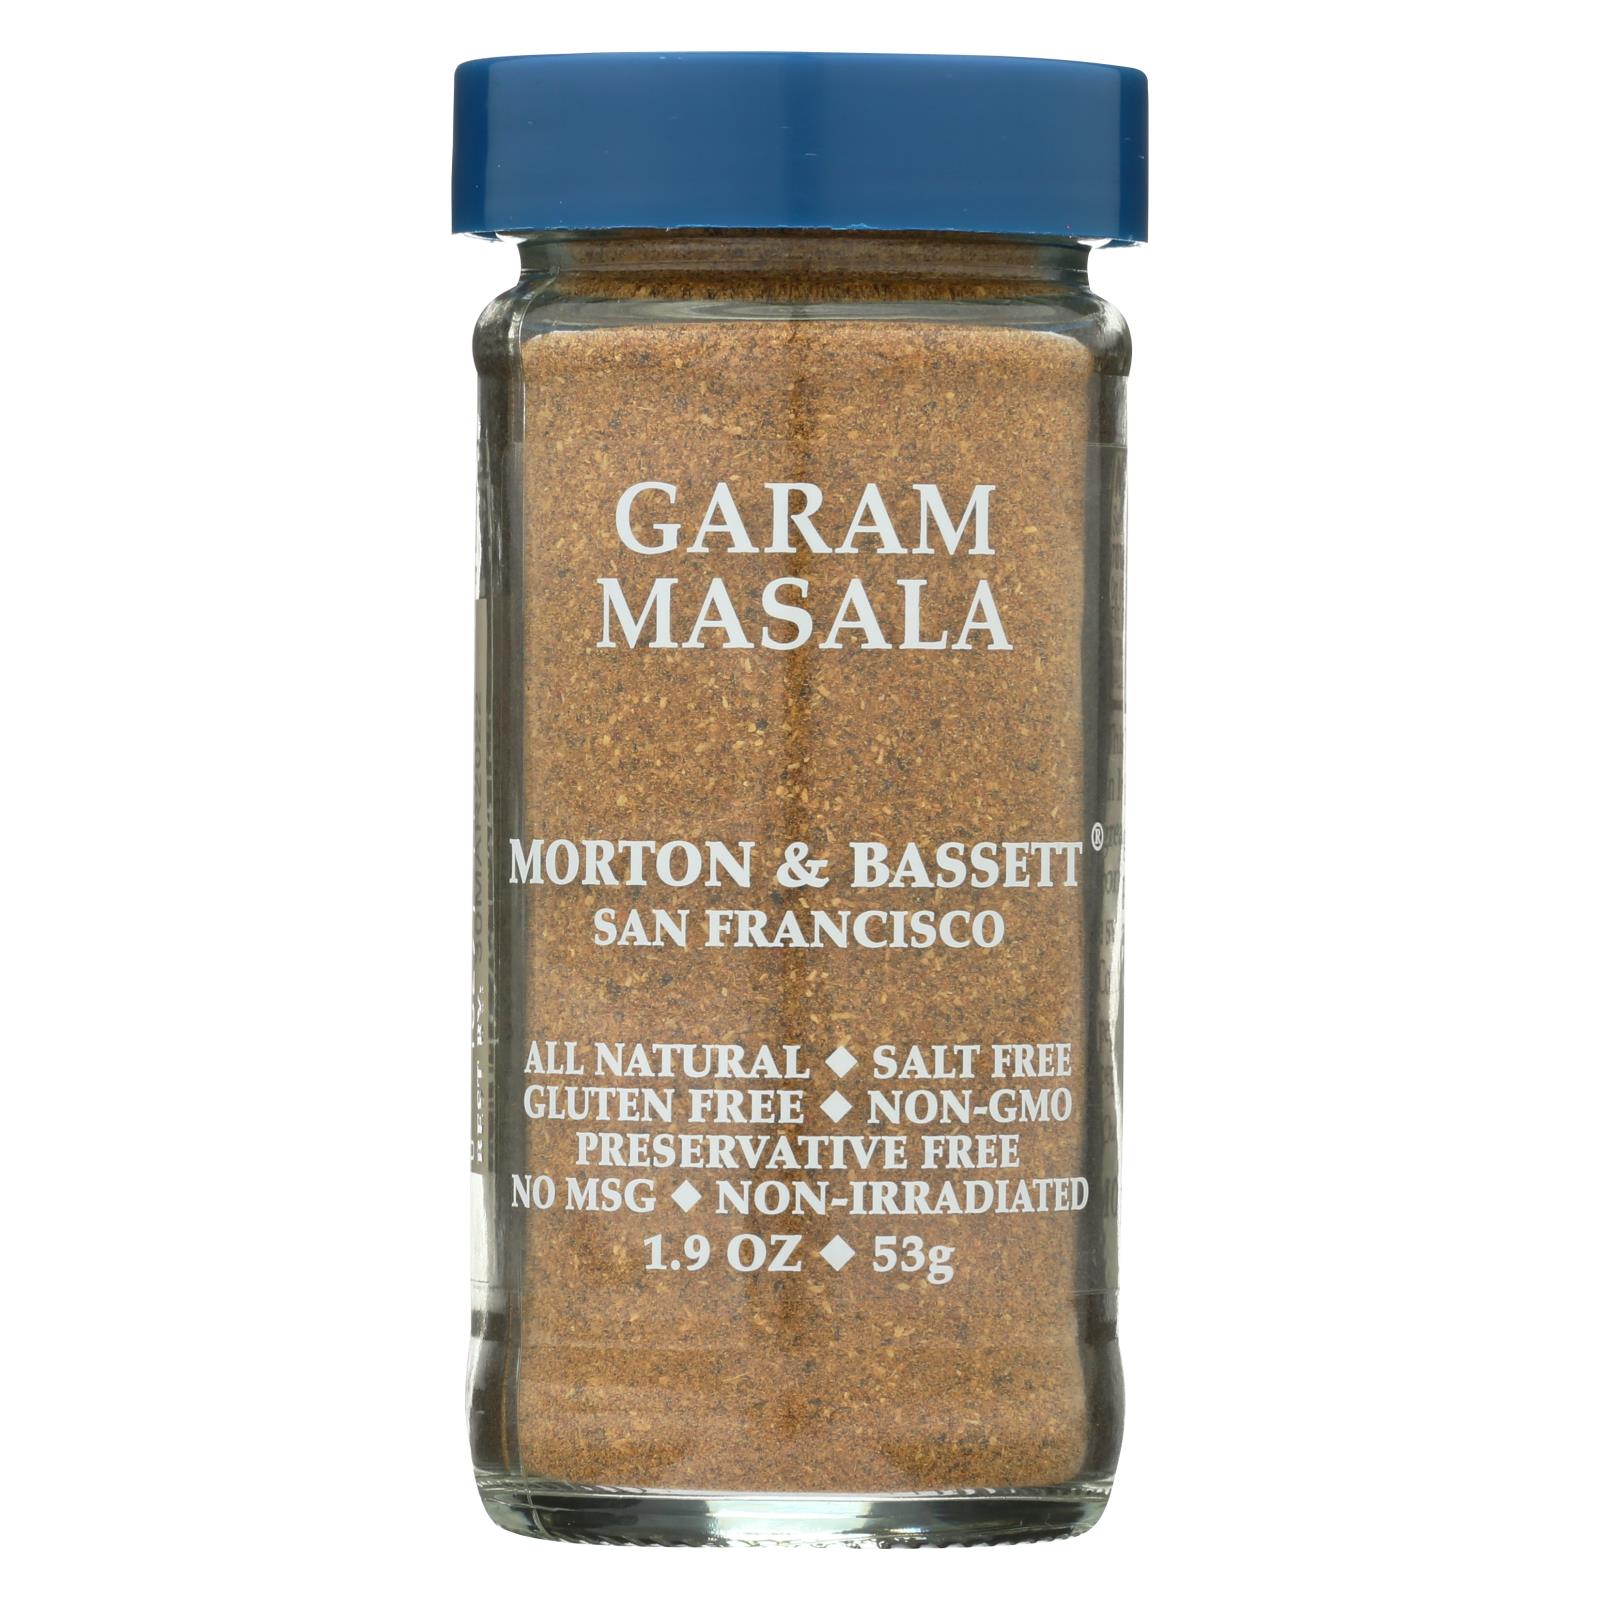 Morton and Bassett - Seasoning - Garam Masala - 3개 묶음상품 - 1.9 oz.